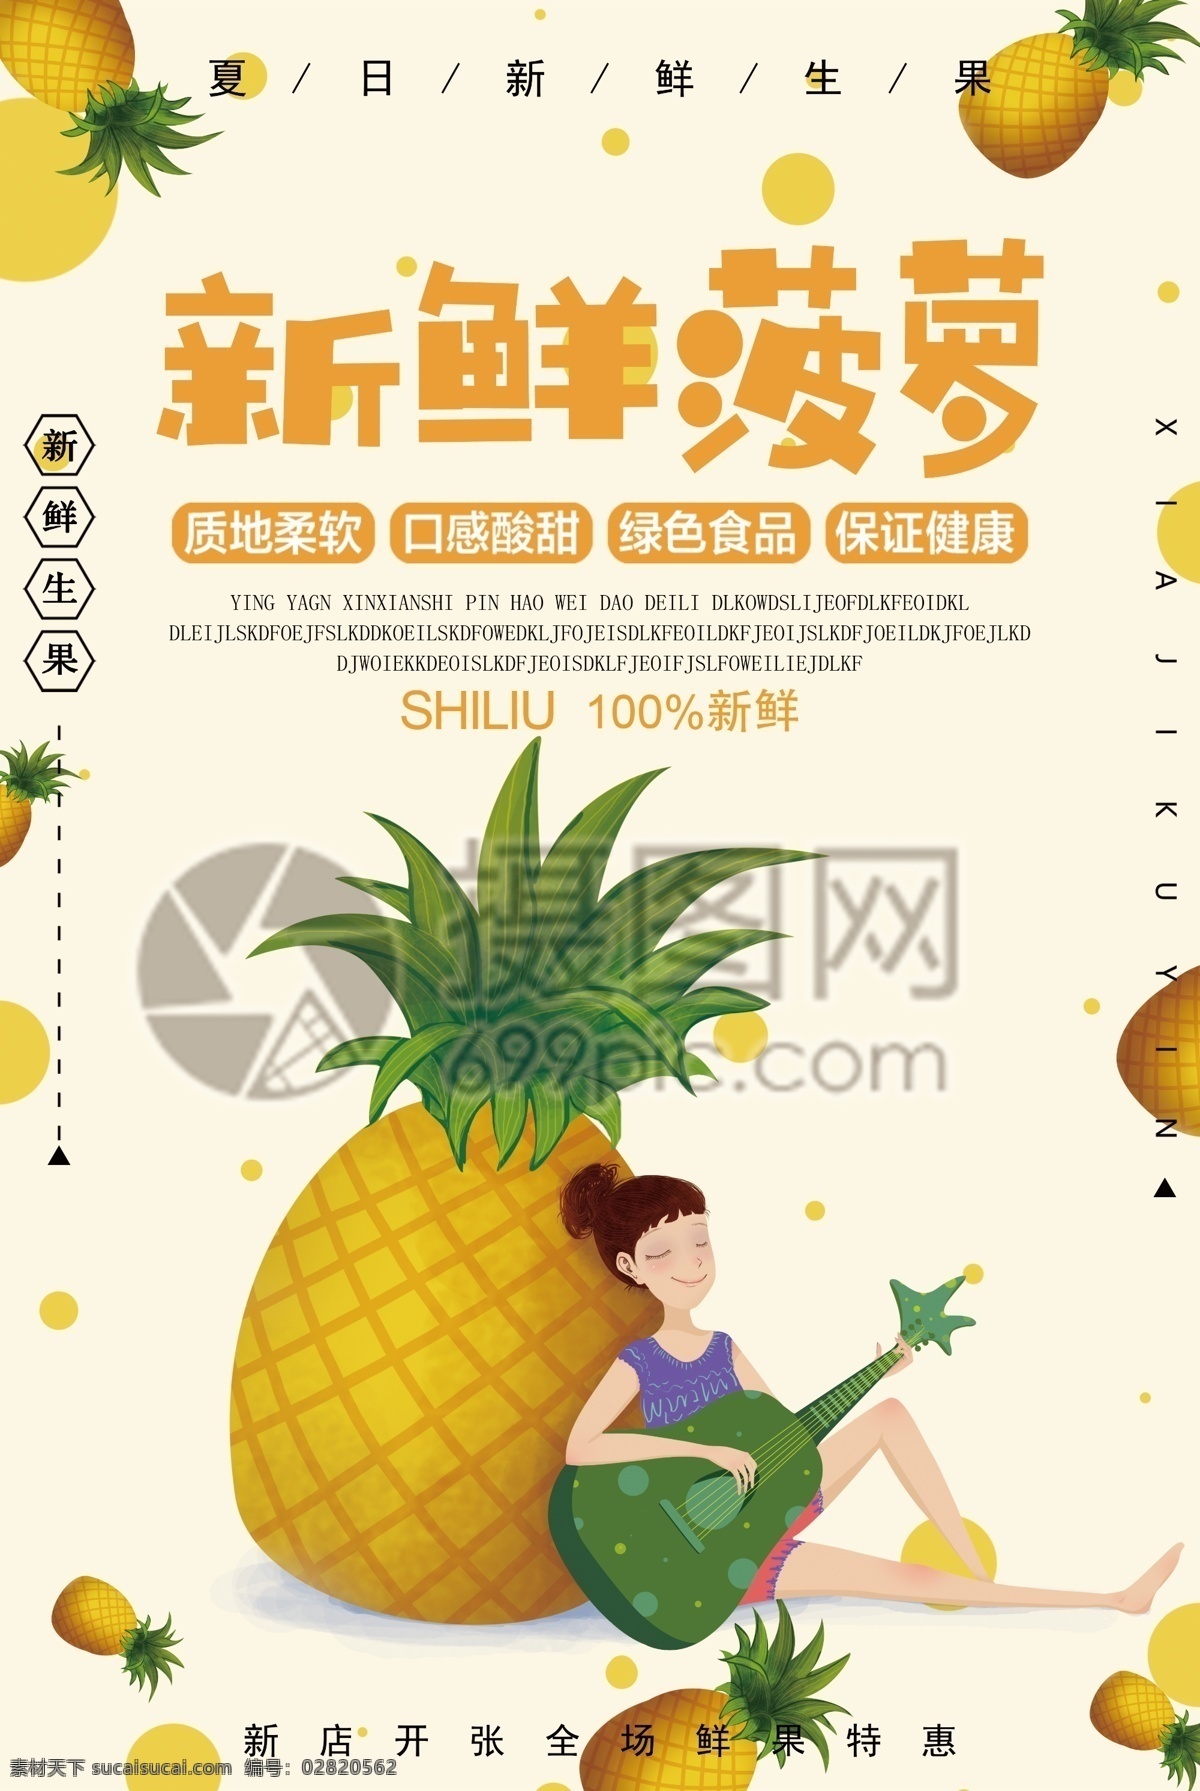 新鲜 菠萝 水果 海报 凤梨 新鲜水果 进口水果 热带水果 水果店 水果超市 有机水果 水果专卖 天然营养 水果海报